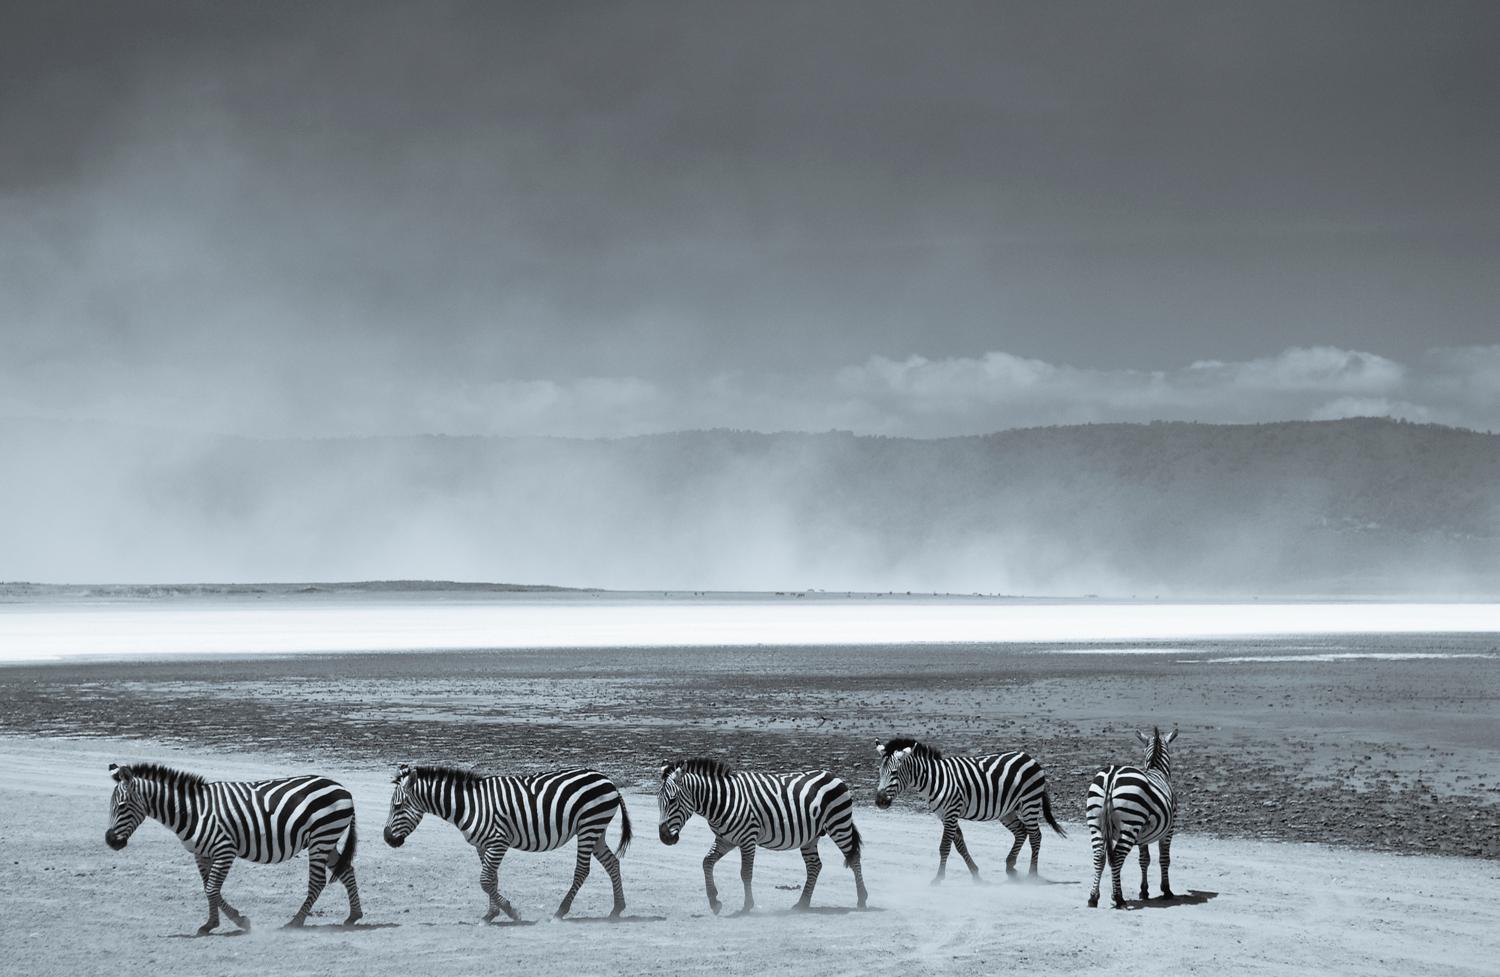 Landscape Photograph Tim Graham - Impression pigmentaire d'art surdimensionnée « Zebras », édition limitée, signée